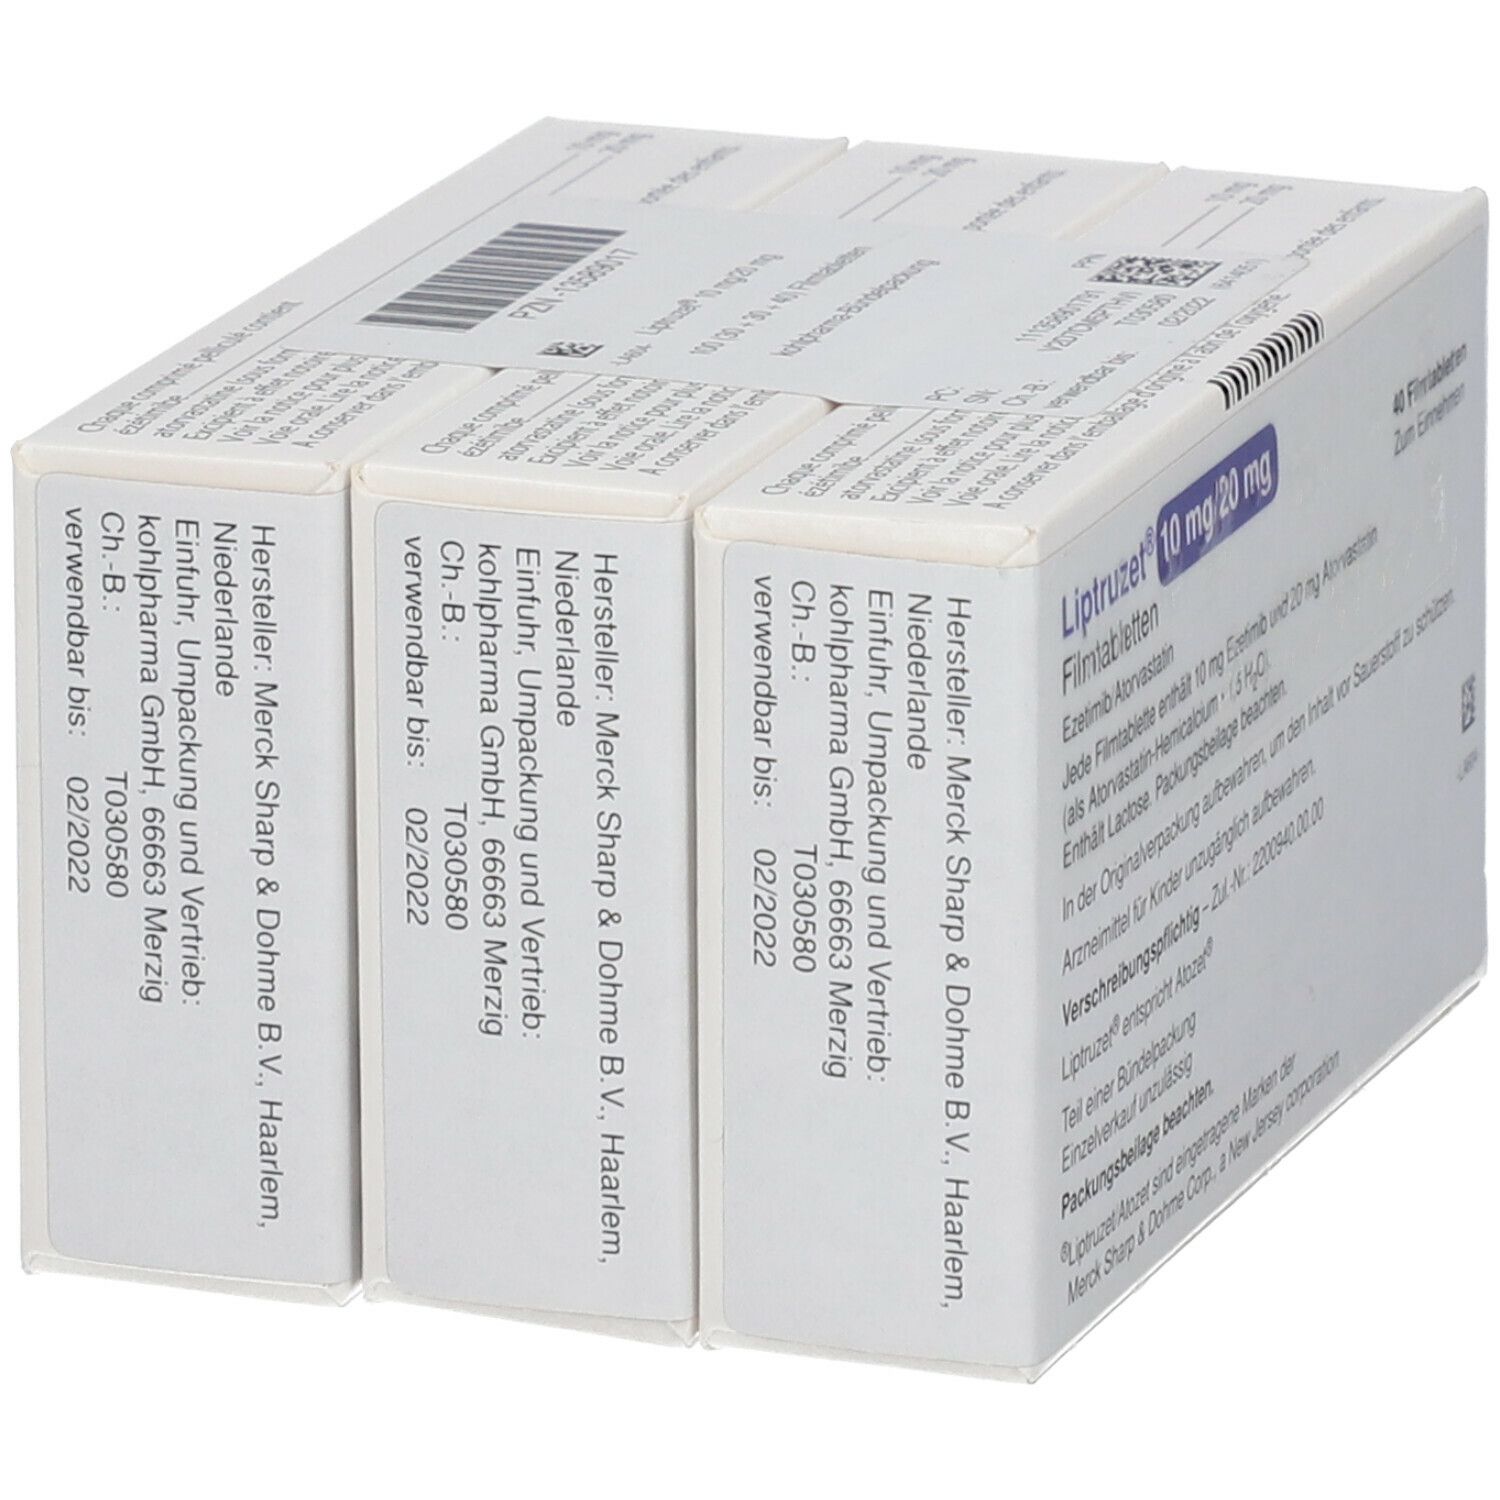 Liptruzet 10 mg/20 mg